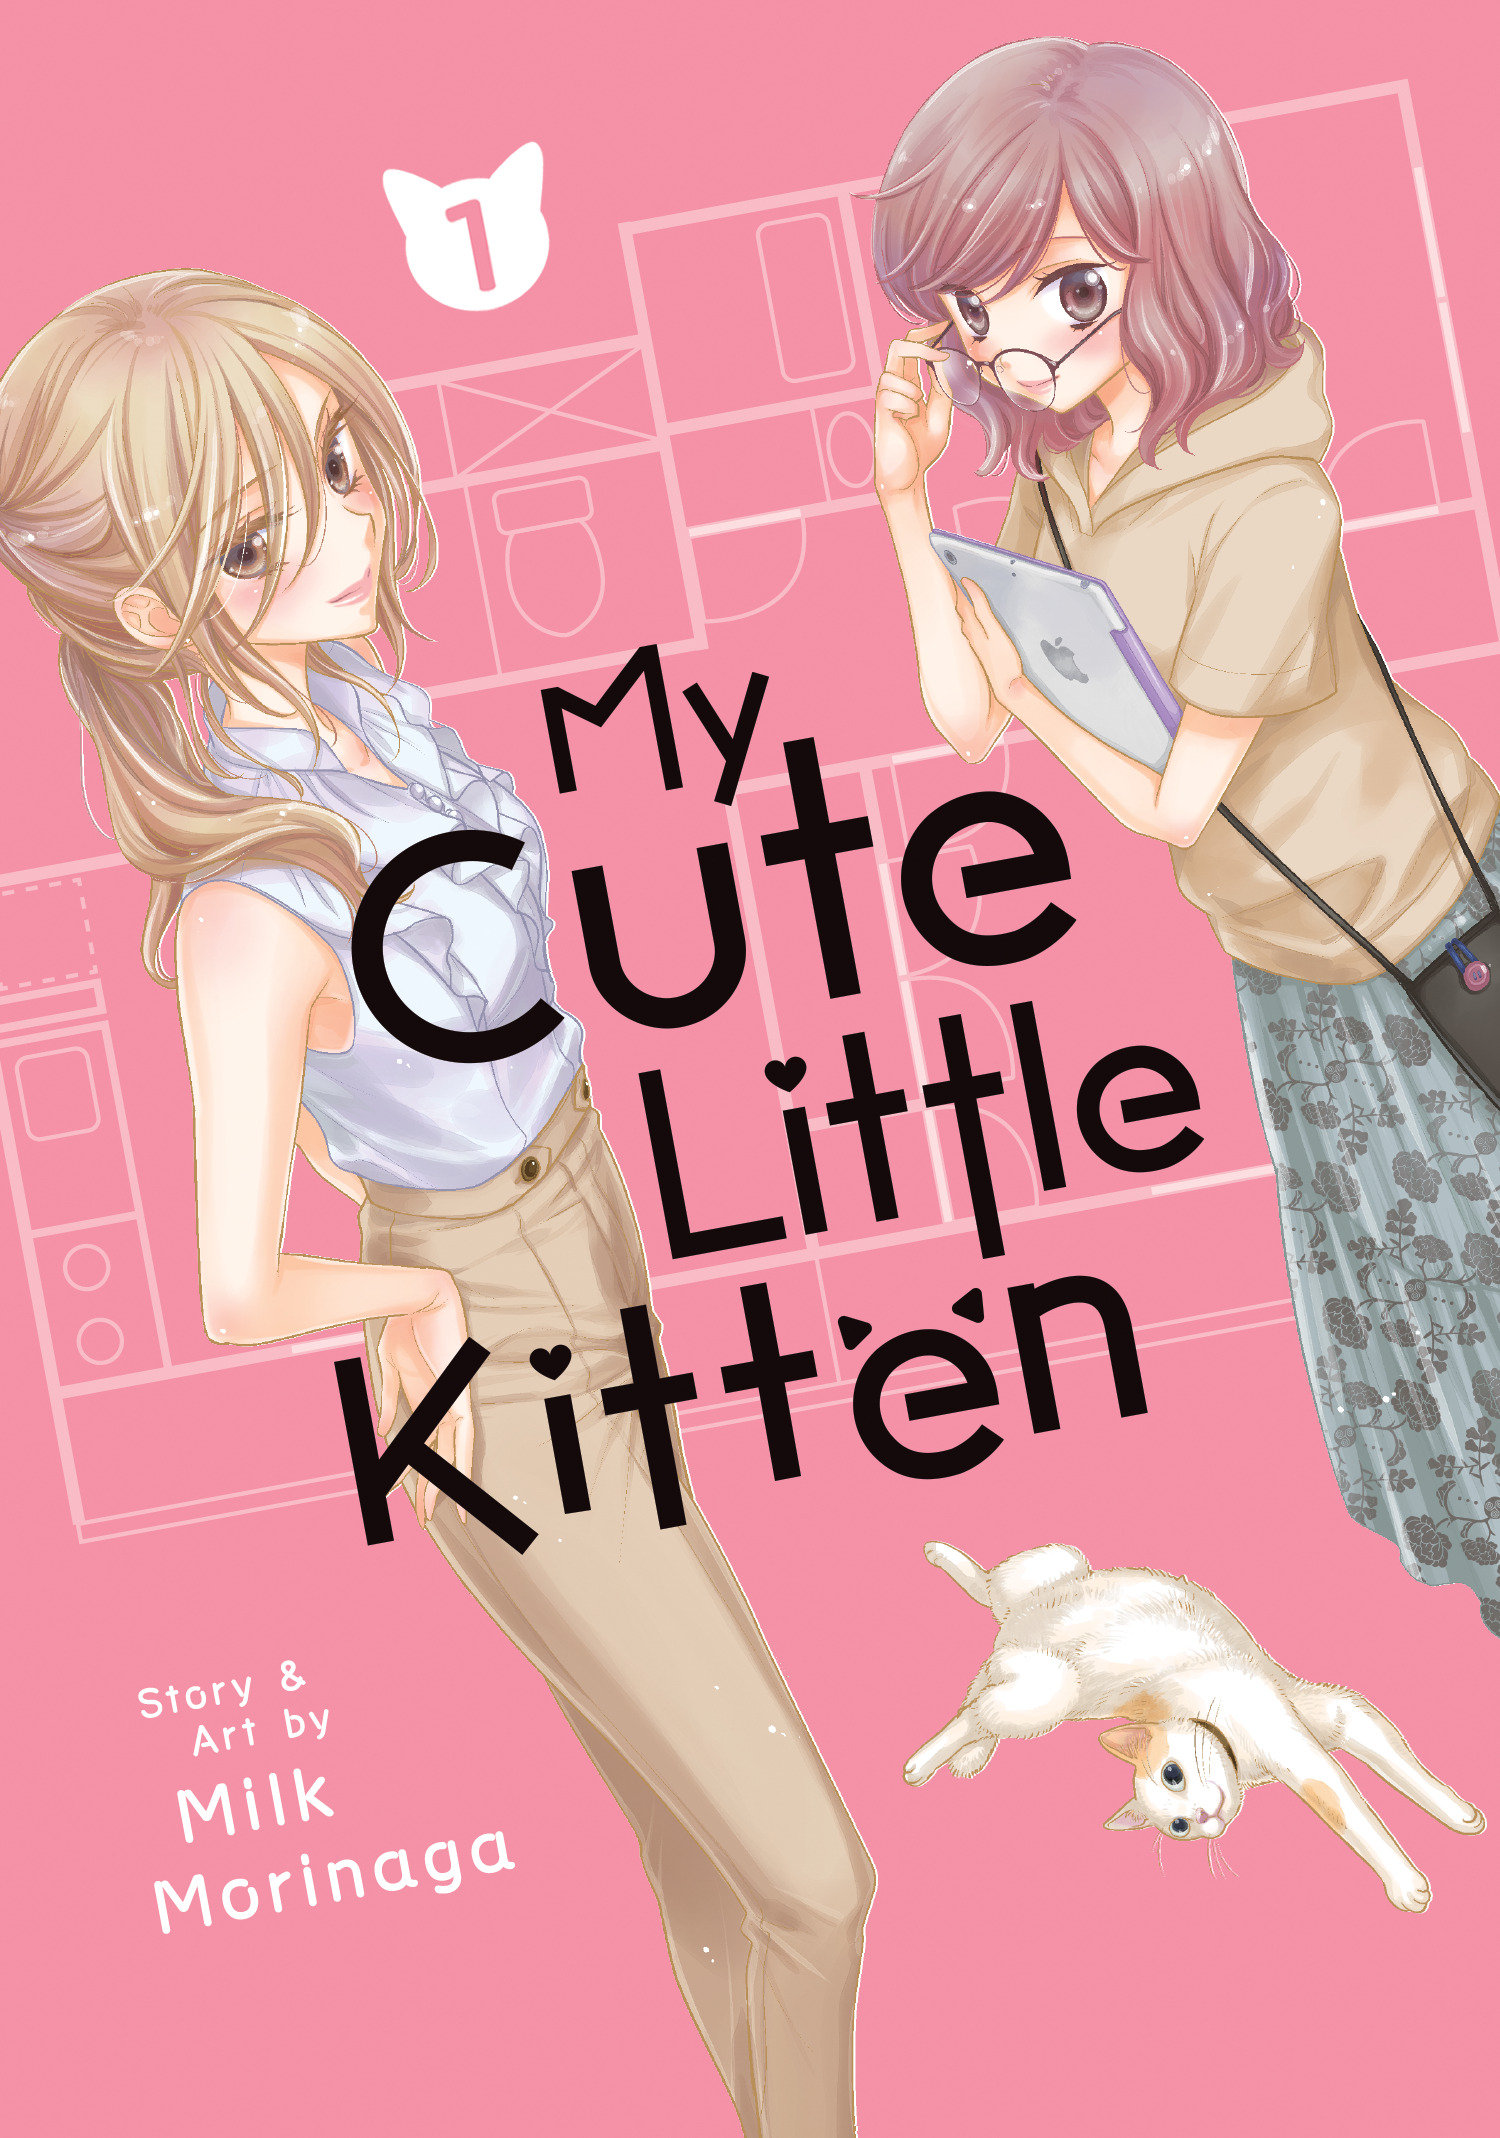 My Cute Little Kitten Vol. 1